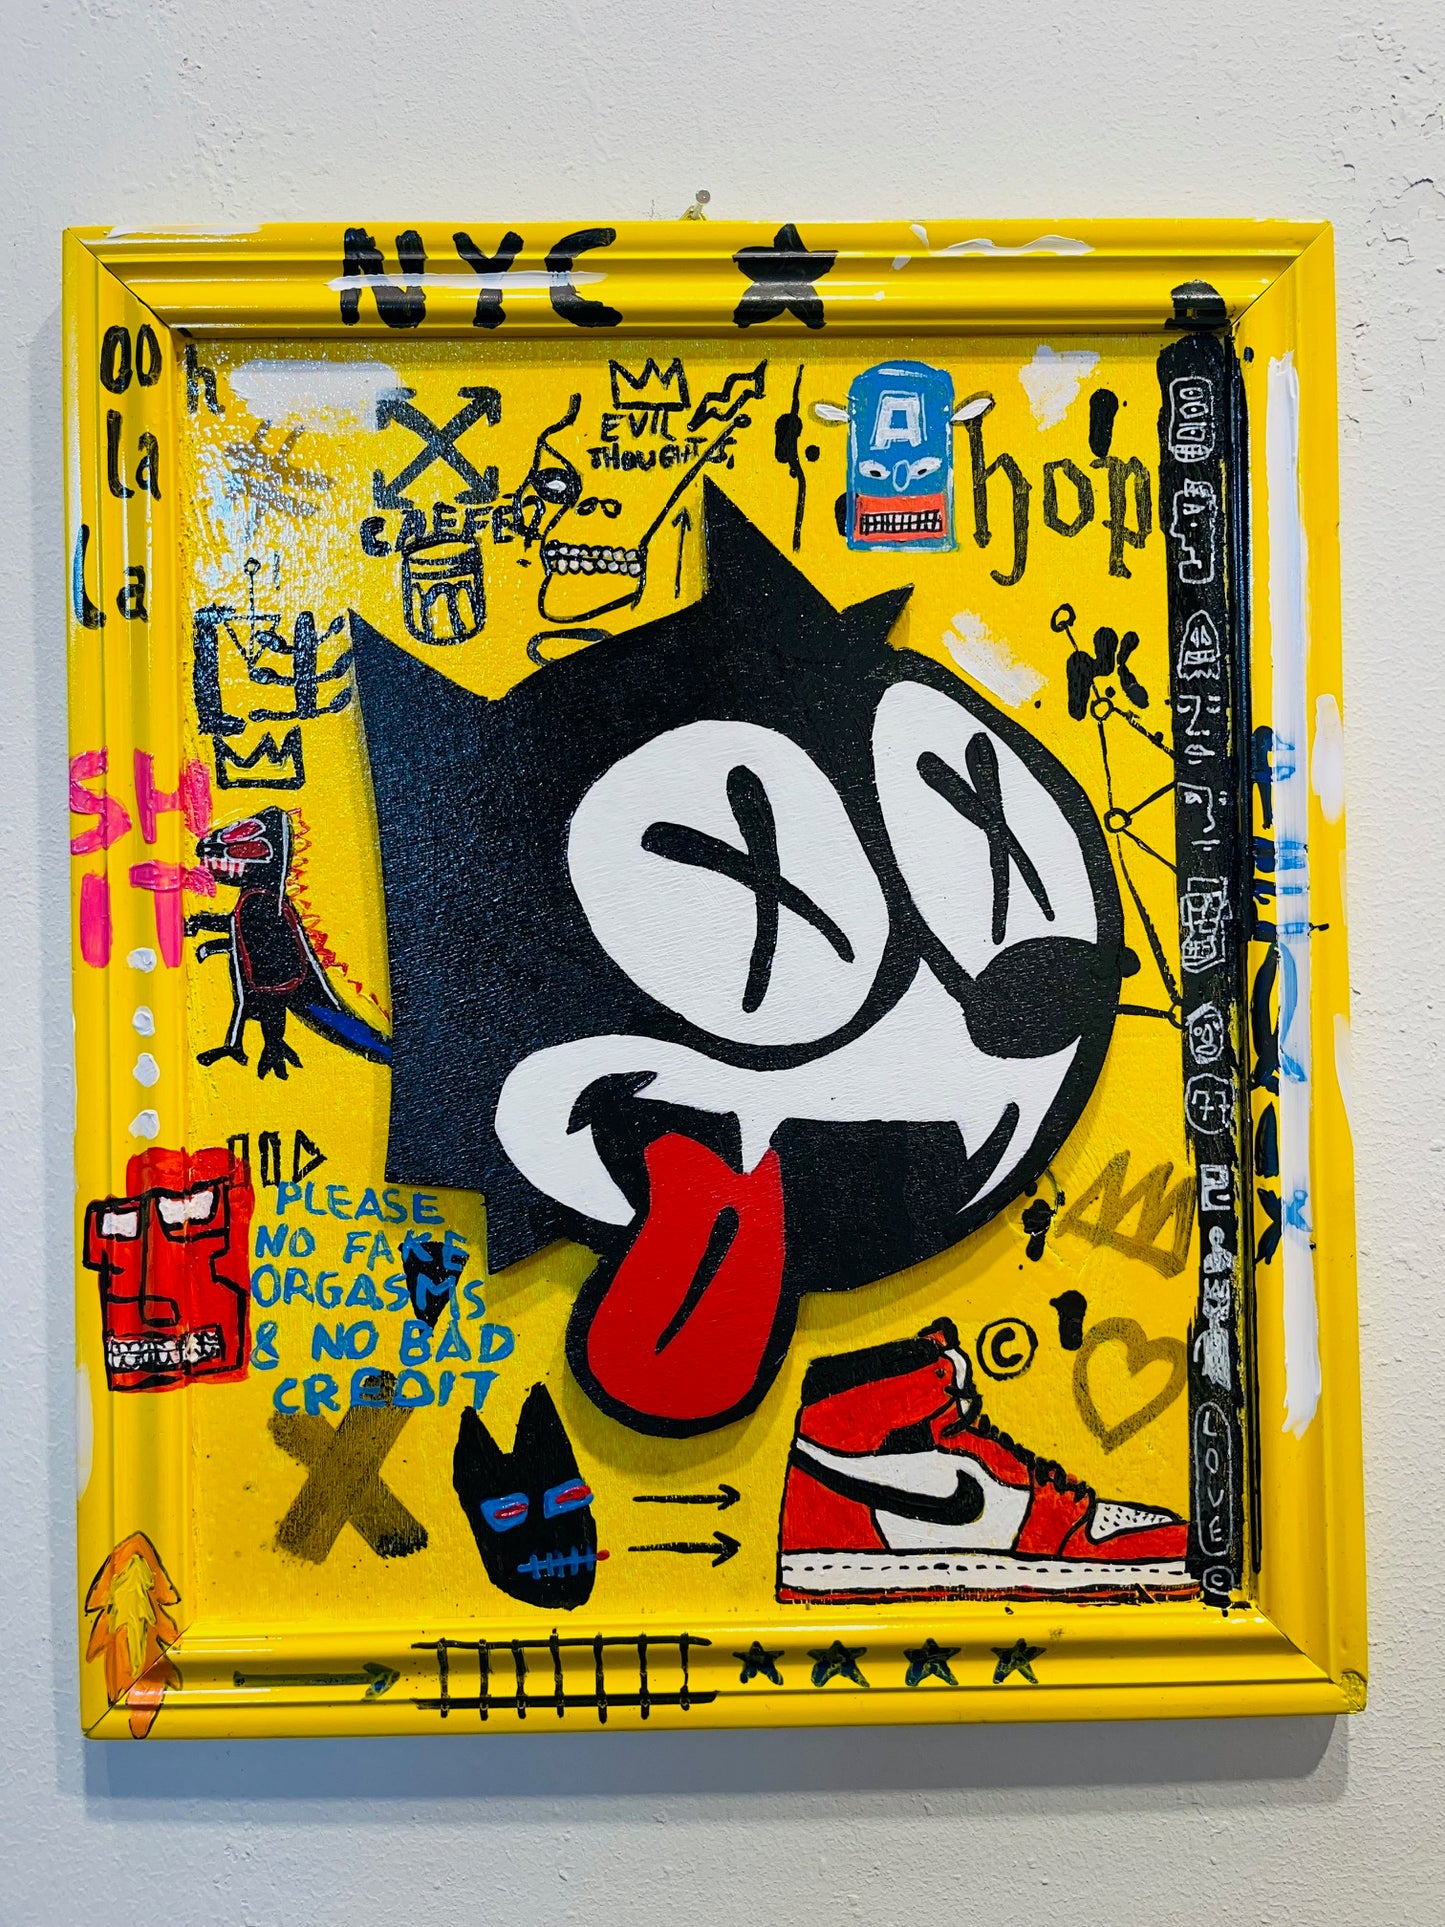 Felix the cat graffiti